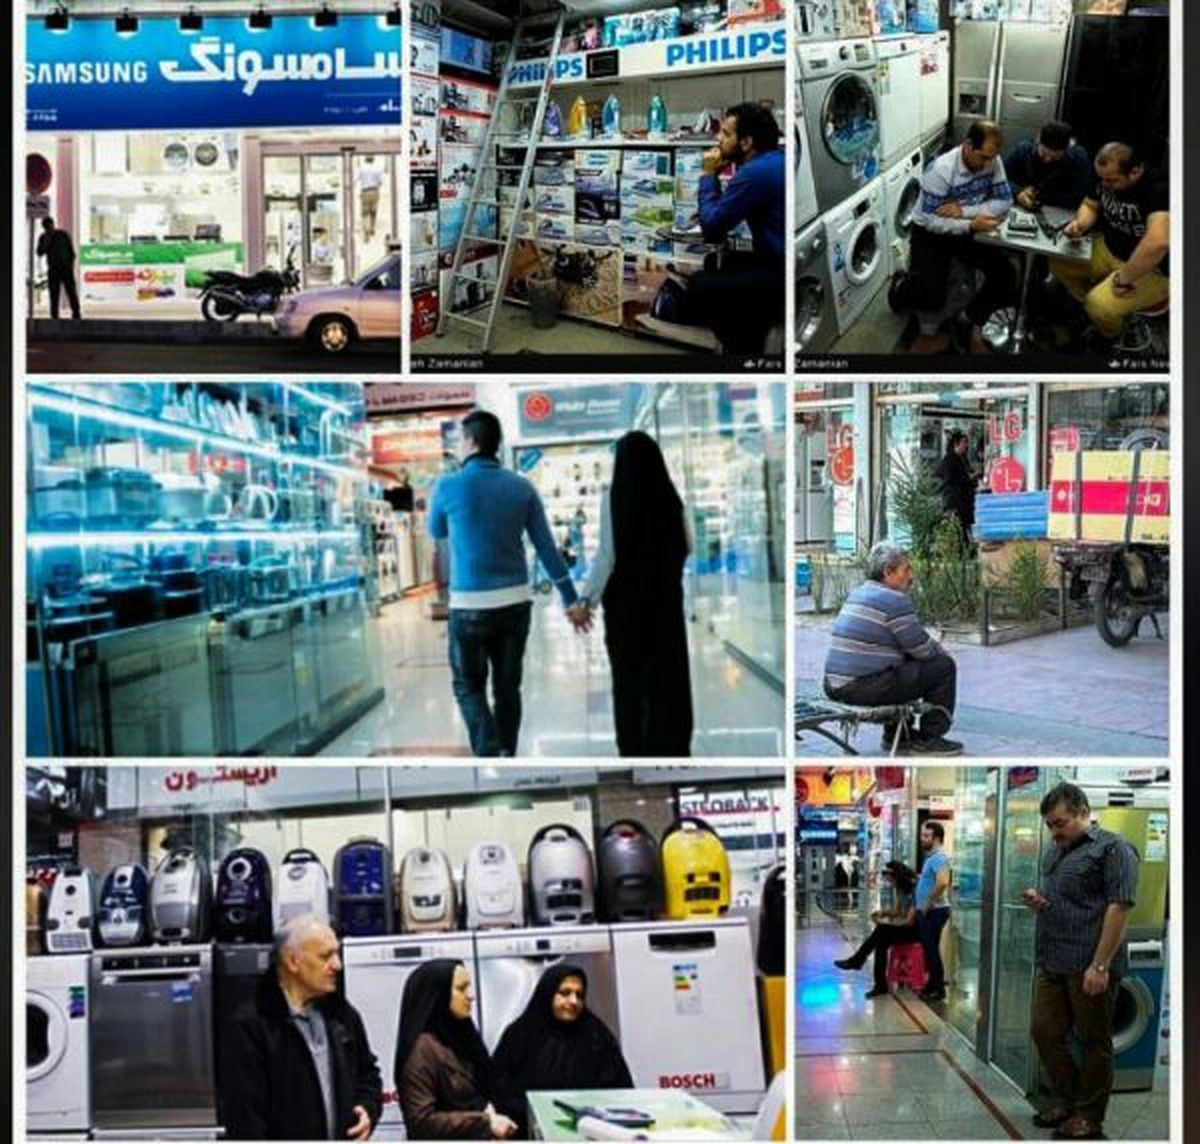 رئیس اتحادیه فروشندگان لوازم خانگی تهران:آقای دولت بایدچوبش رابخورد!/آقای توکلی شیرین زبانی کرد،بایدجوابگوباشد